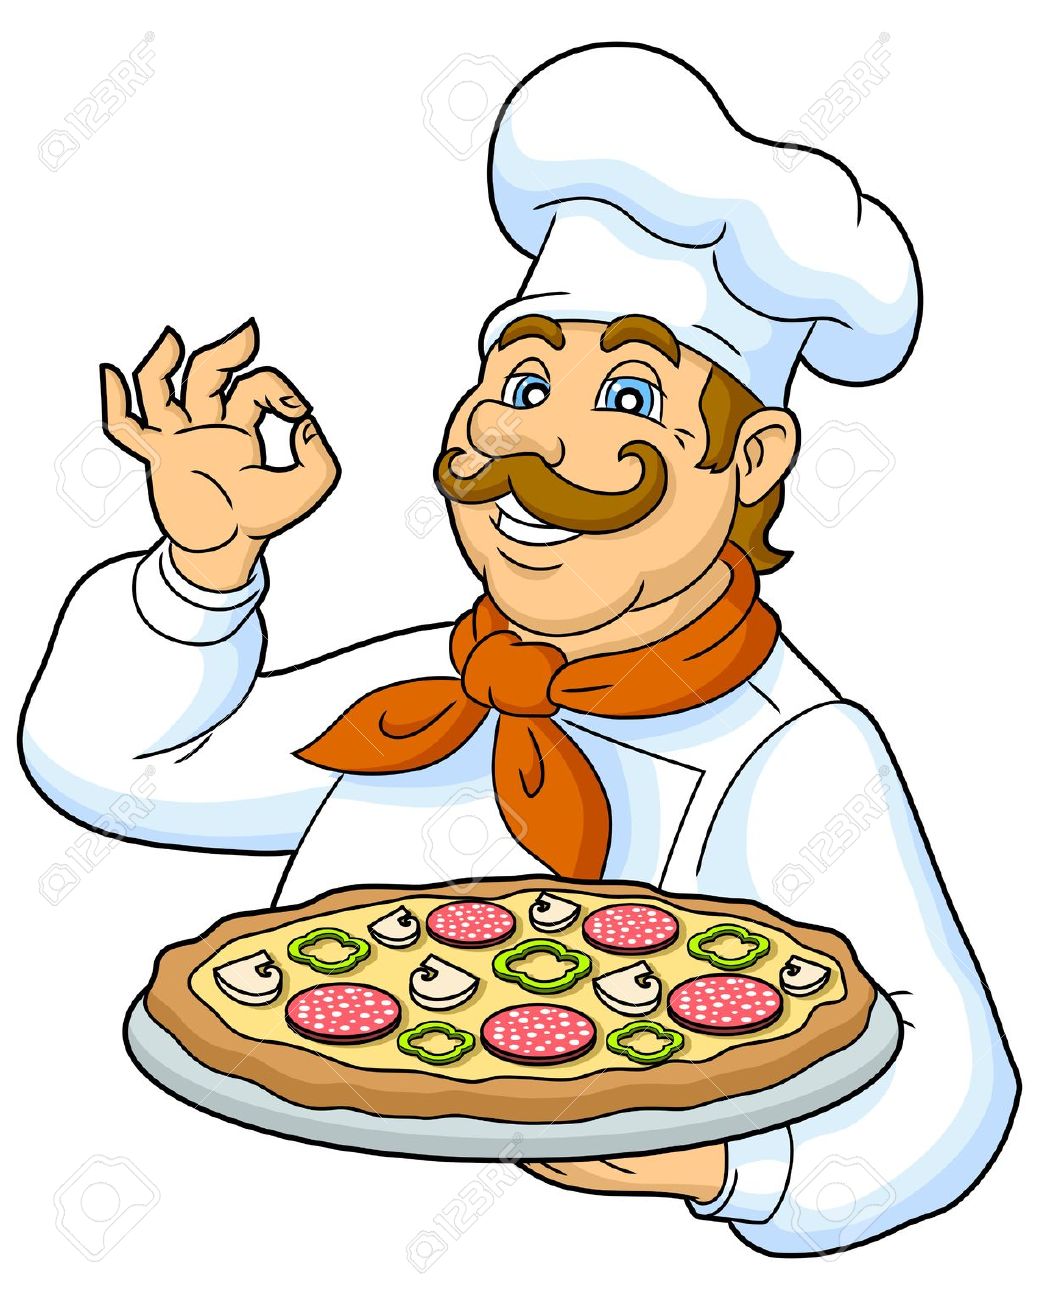 baker clipart pizza